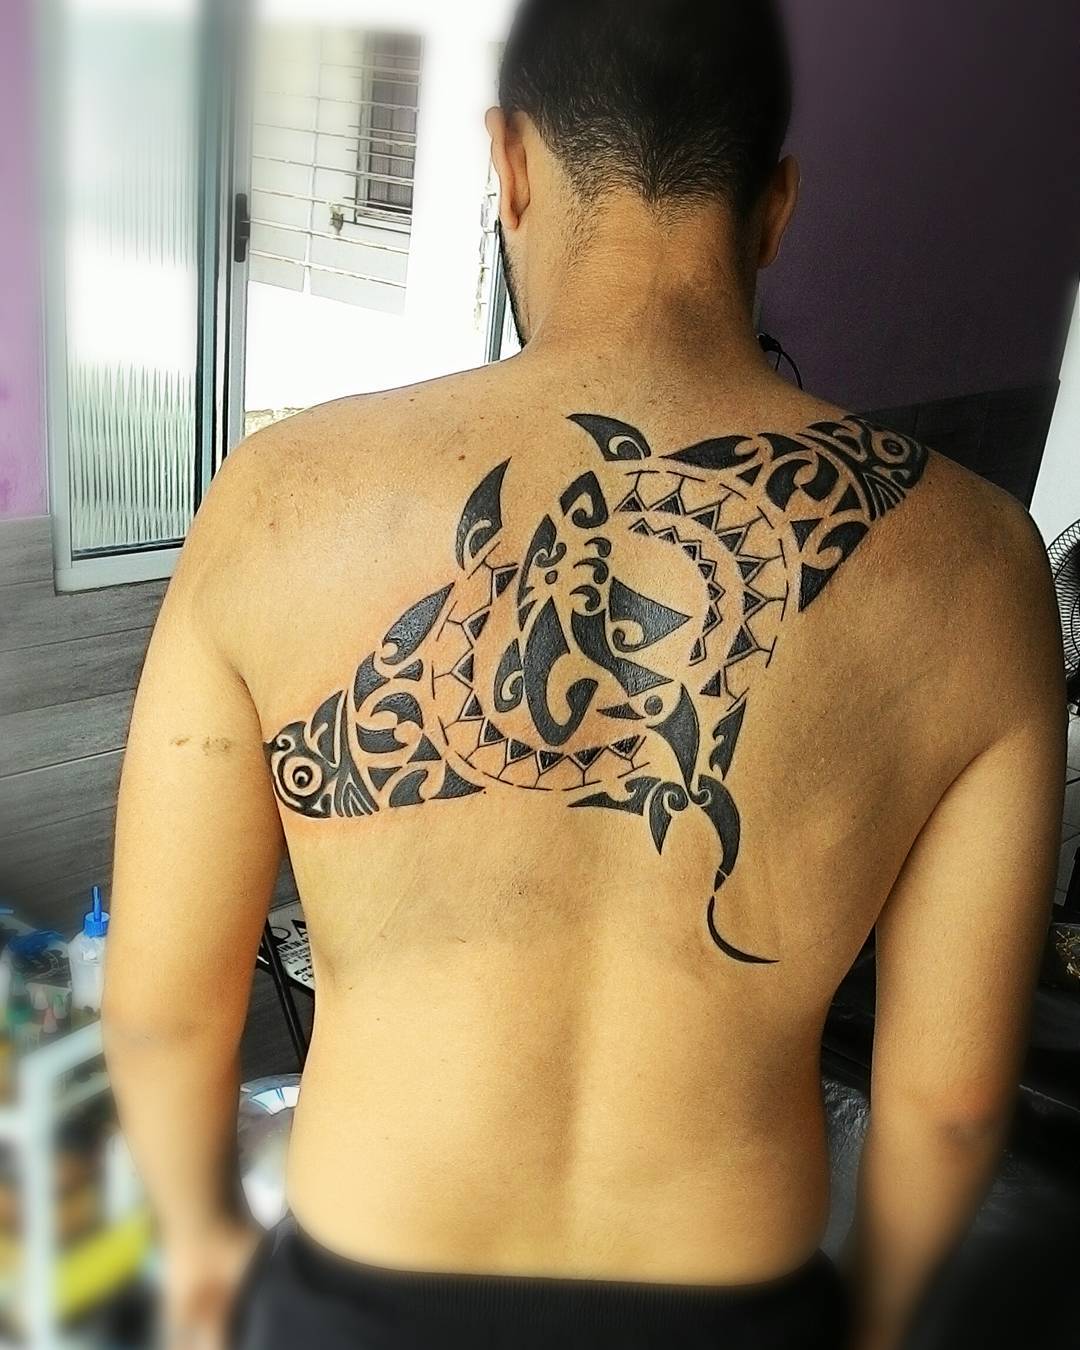 Maori Tattoo Back - Best Tattoo Ideas Gallery